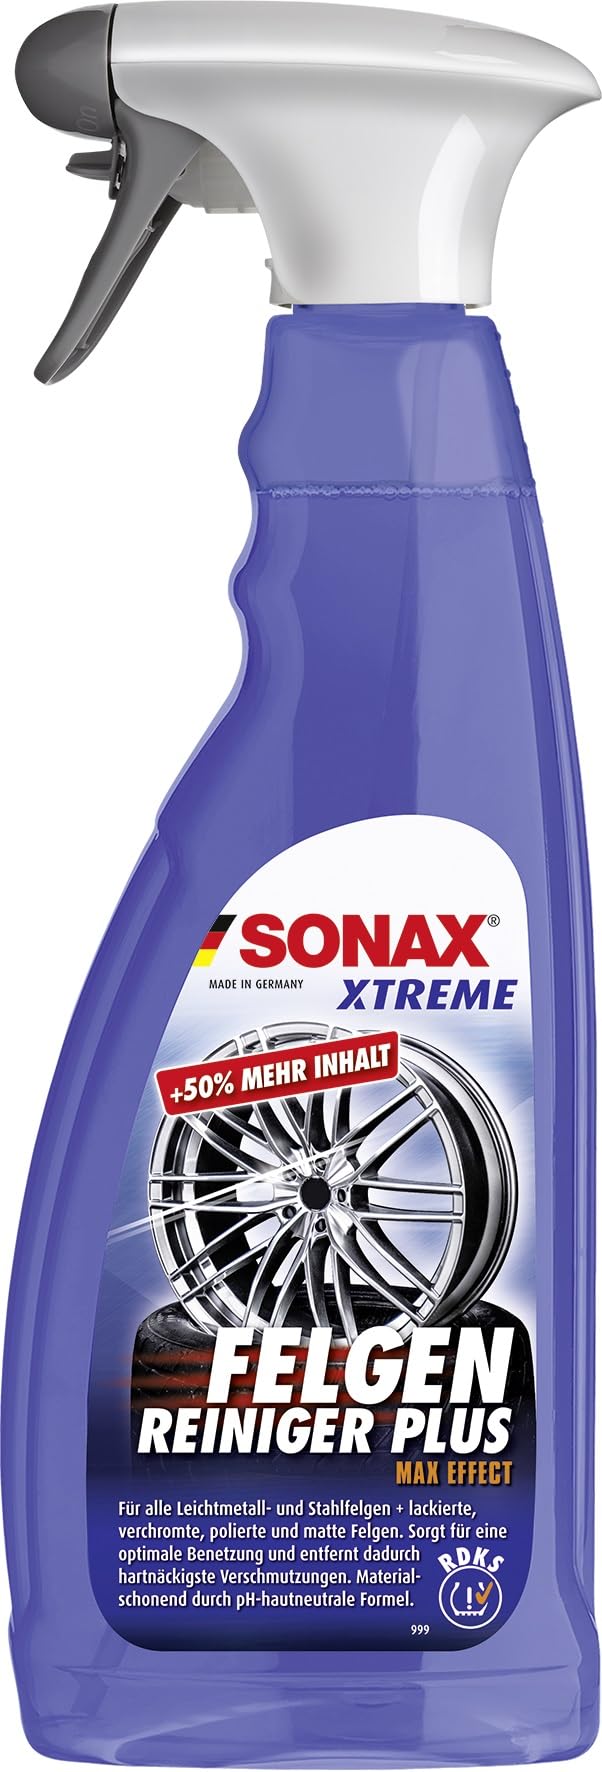 SONAX XTREME Felgenreiniger PLUS (750 ml) effiziente und säurefreie Reinigung aller Leichtmetall- und Stahlfelgen sowie lackierte, verchromte und polierte Felgen | Art-Nr. 02304000 von SONAX